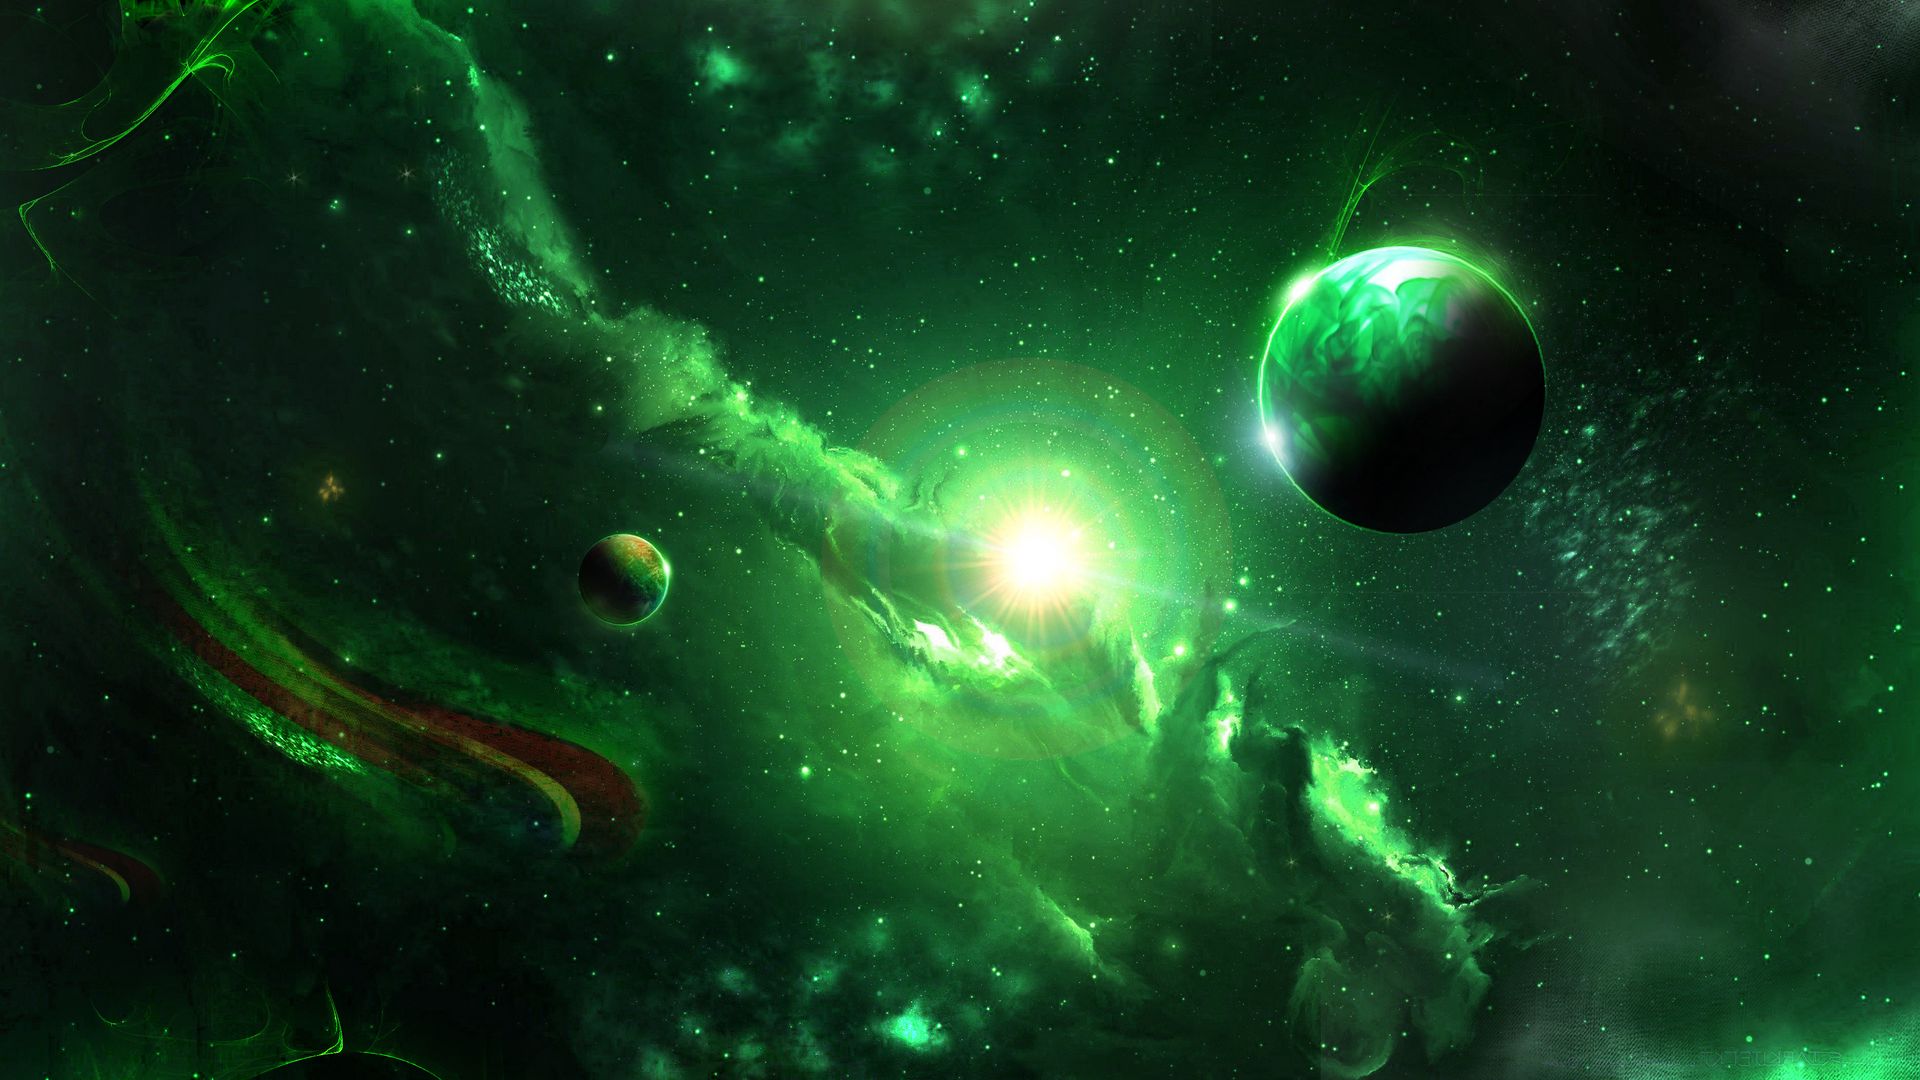 Bộ Sưu Tập Hình Nền Galaxy Green Background đẹp Nhất